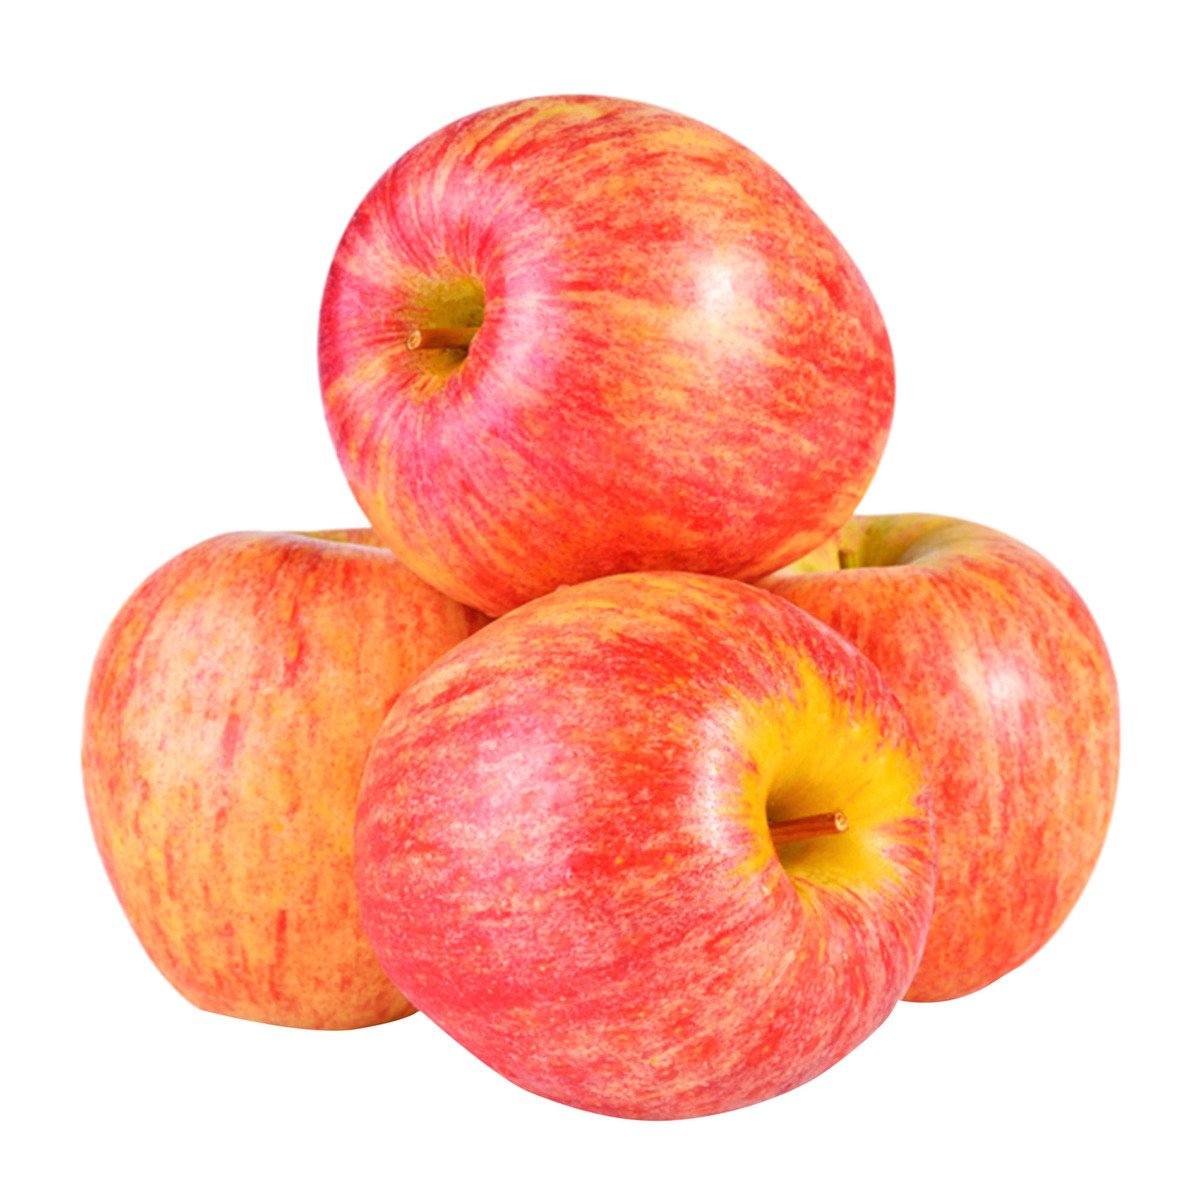 اشتري قم بشراء تفاح رويال جالا المملكة المتحدة 1 كجم Online at Best Price من الموقع - من لولو هايبر ماركت Apples في السعودية